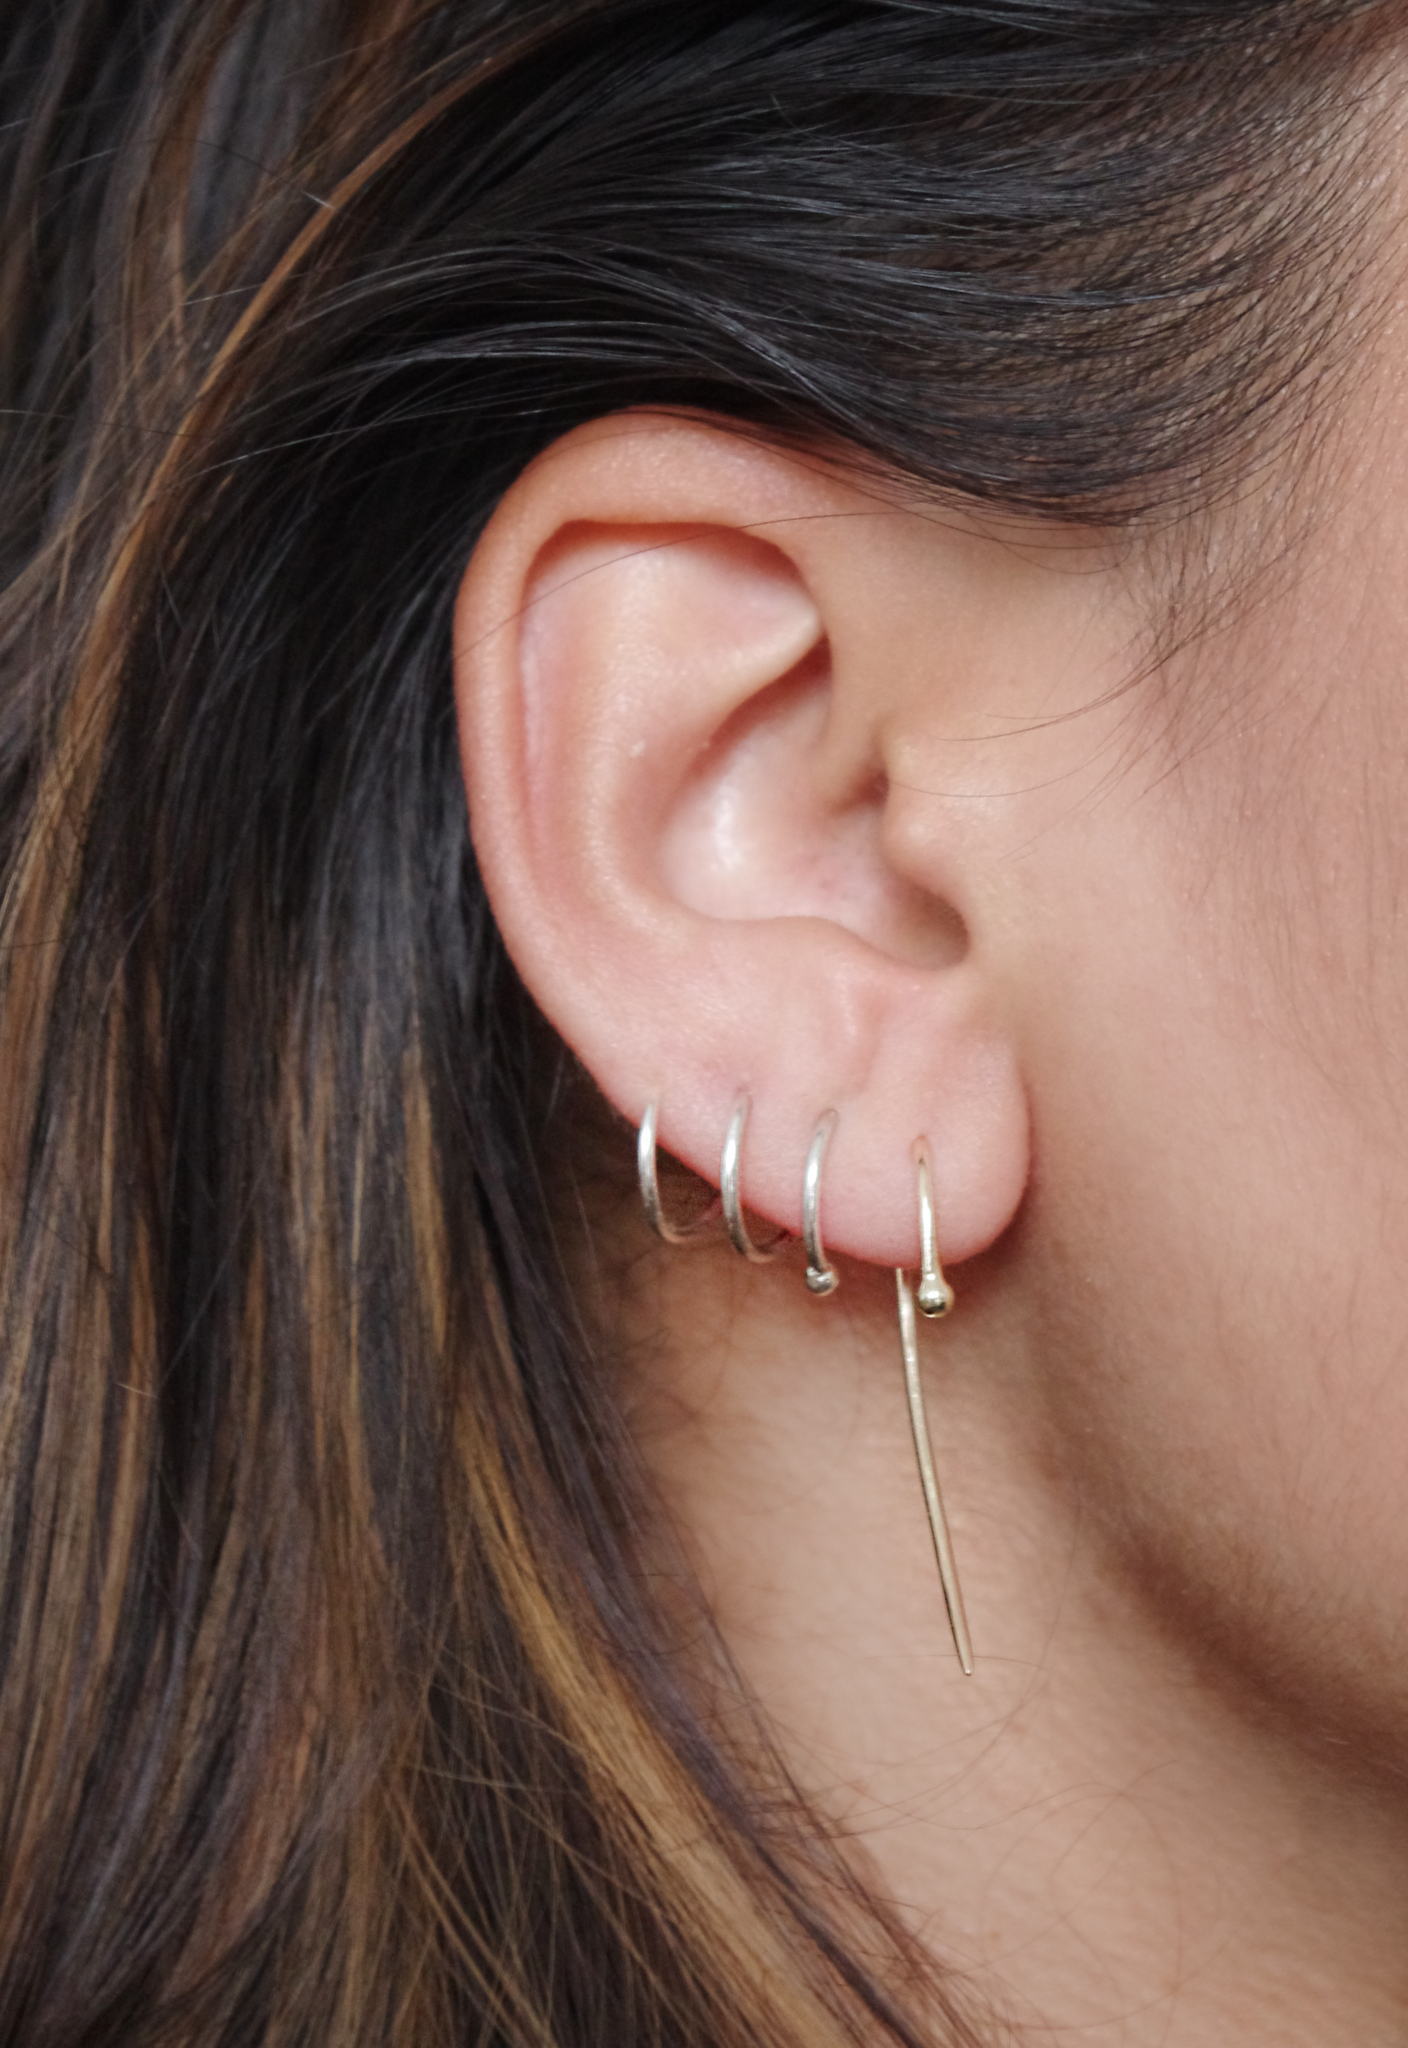 Fireflies Earrings: Ear sterling silver